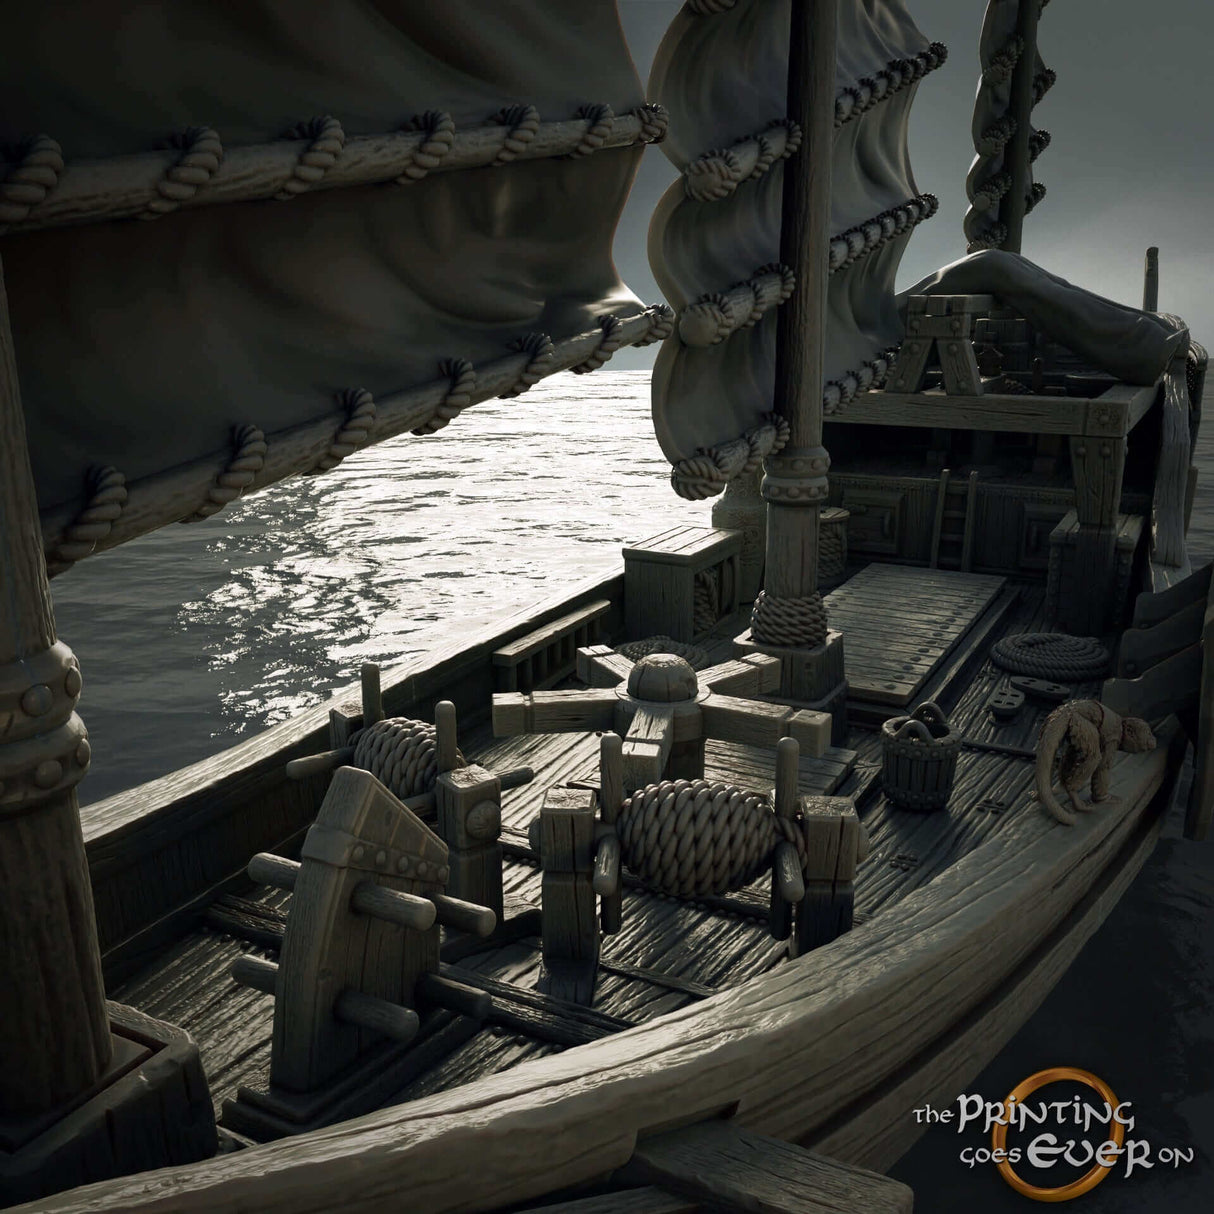 Hochwertige Zubehörteile zur individuellen Gestaltung des Riesen-Junk-Schiffs für Tabletop-Piratenspiele